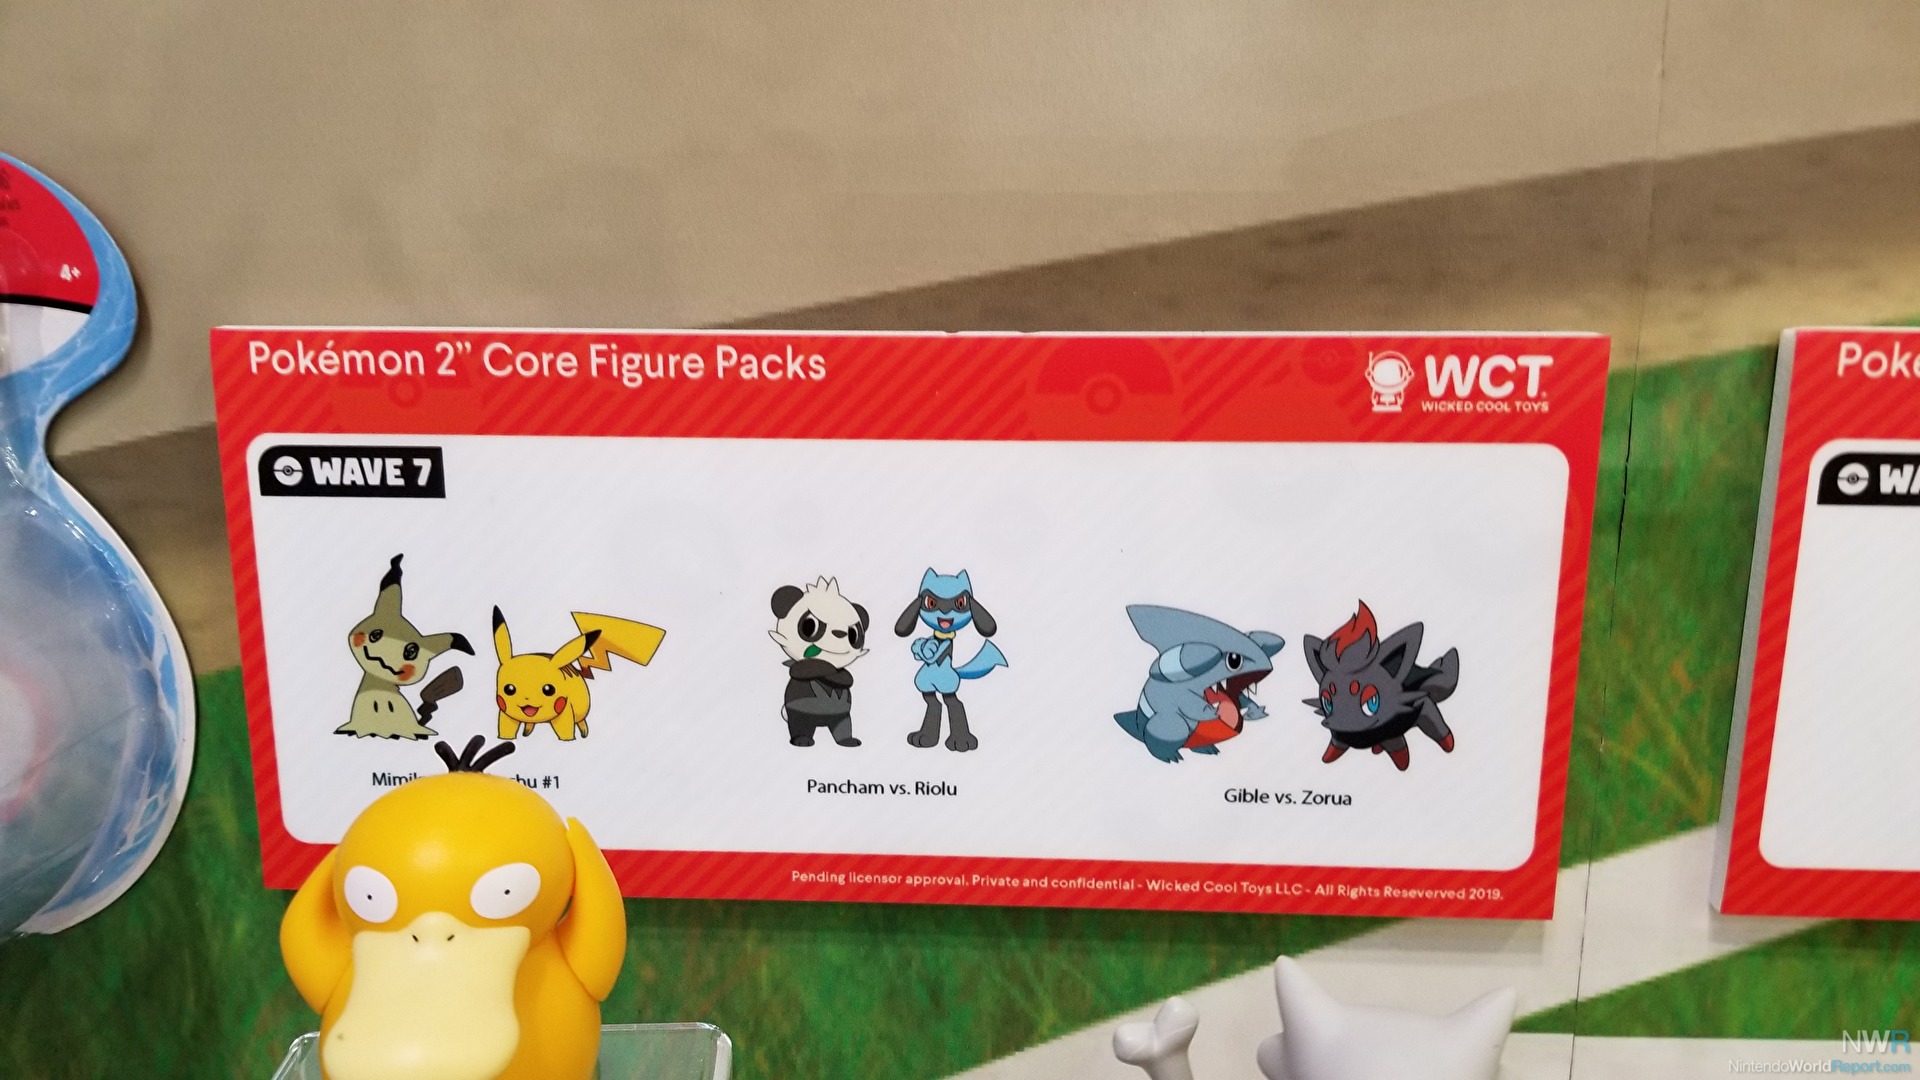 NOVA COLEÇÃO de Pokémon (Alola), Wicked Cool Toys (WTC/2018), DTC  Brinquedos